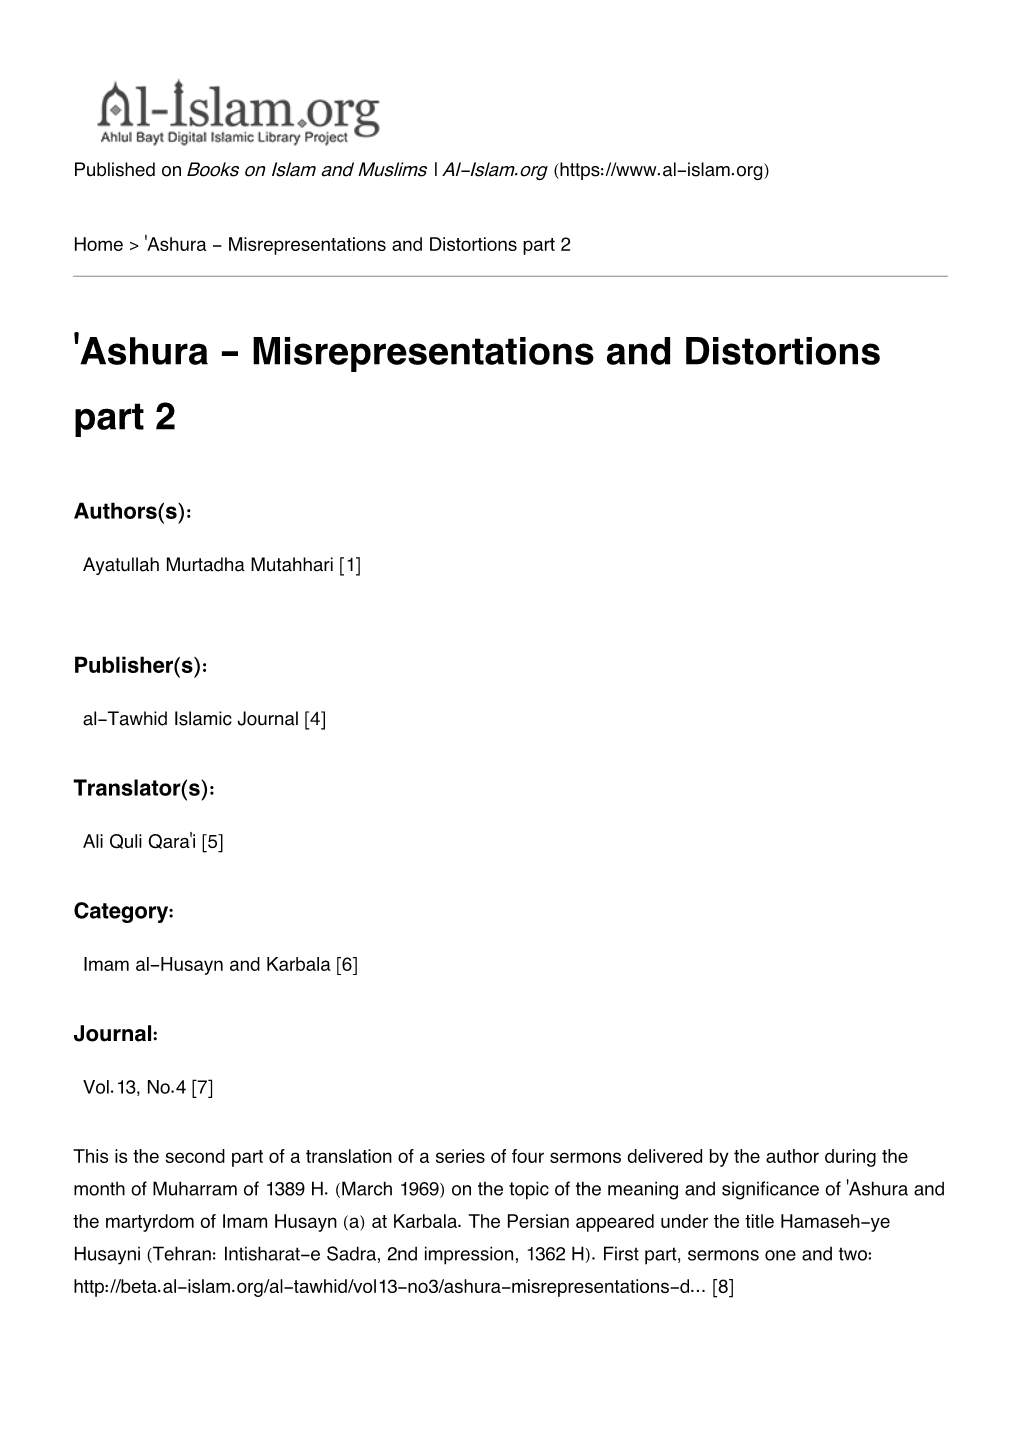 Ashura - Misrepresentations and Distortions Part 2